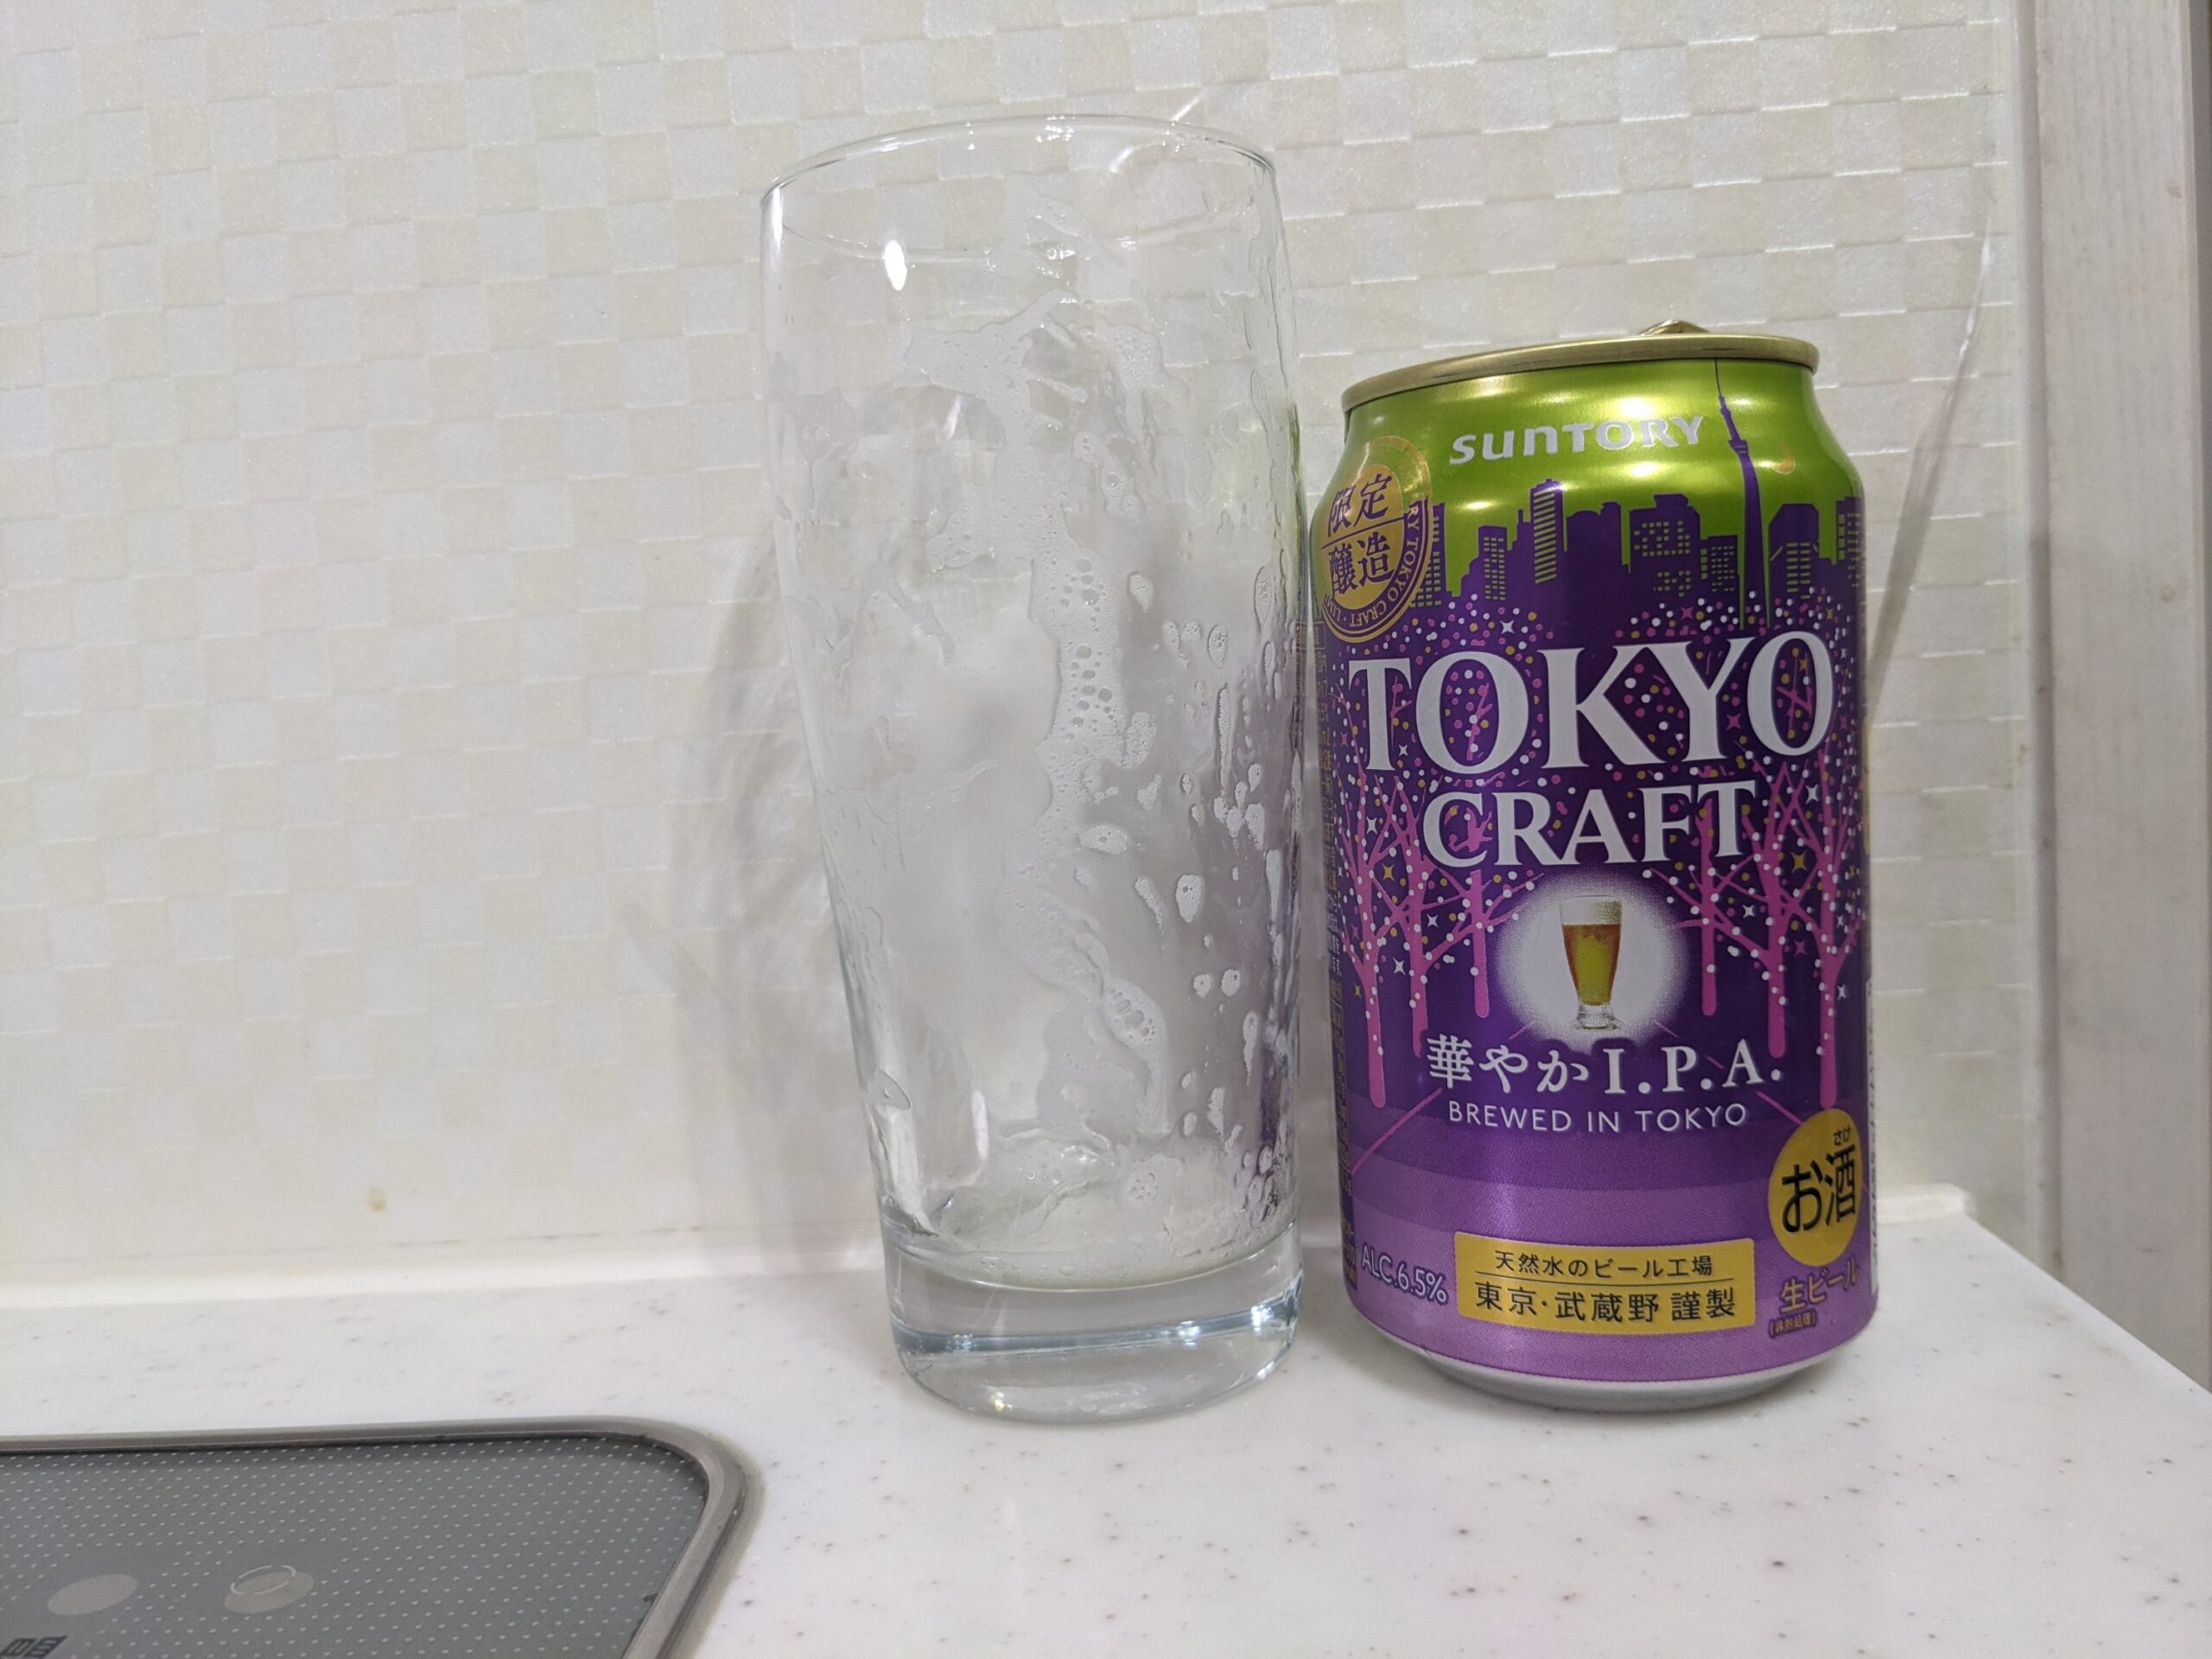 「東京クラフト華やかI.P.A.」が飲み終えたグラスとその空き缶